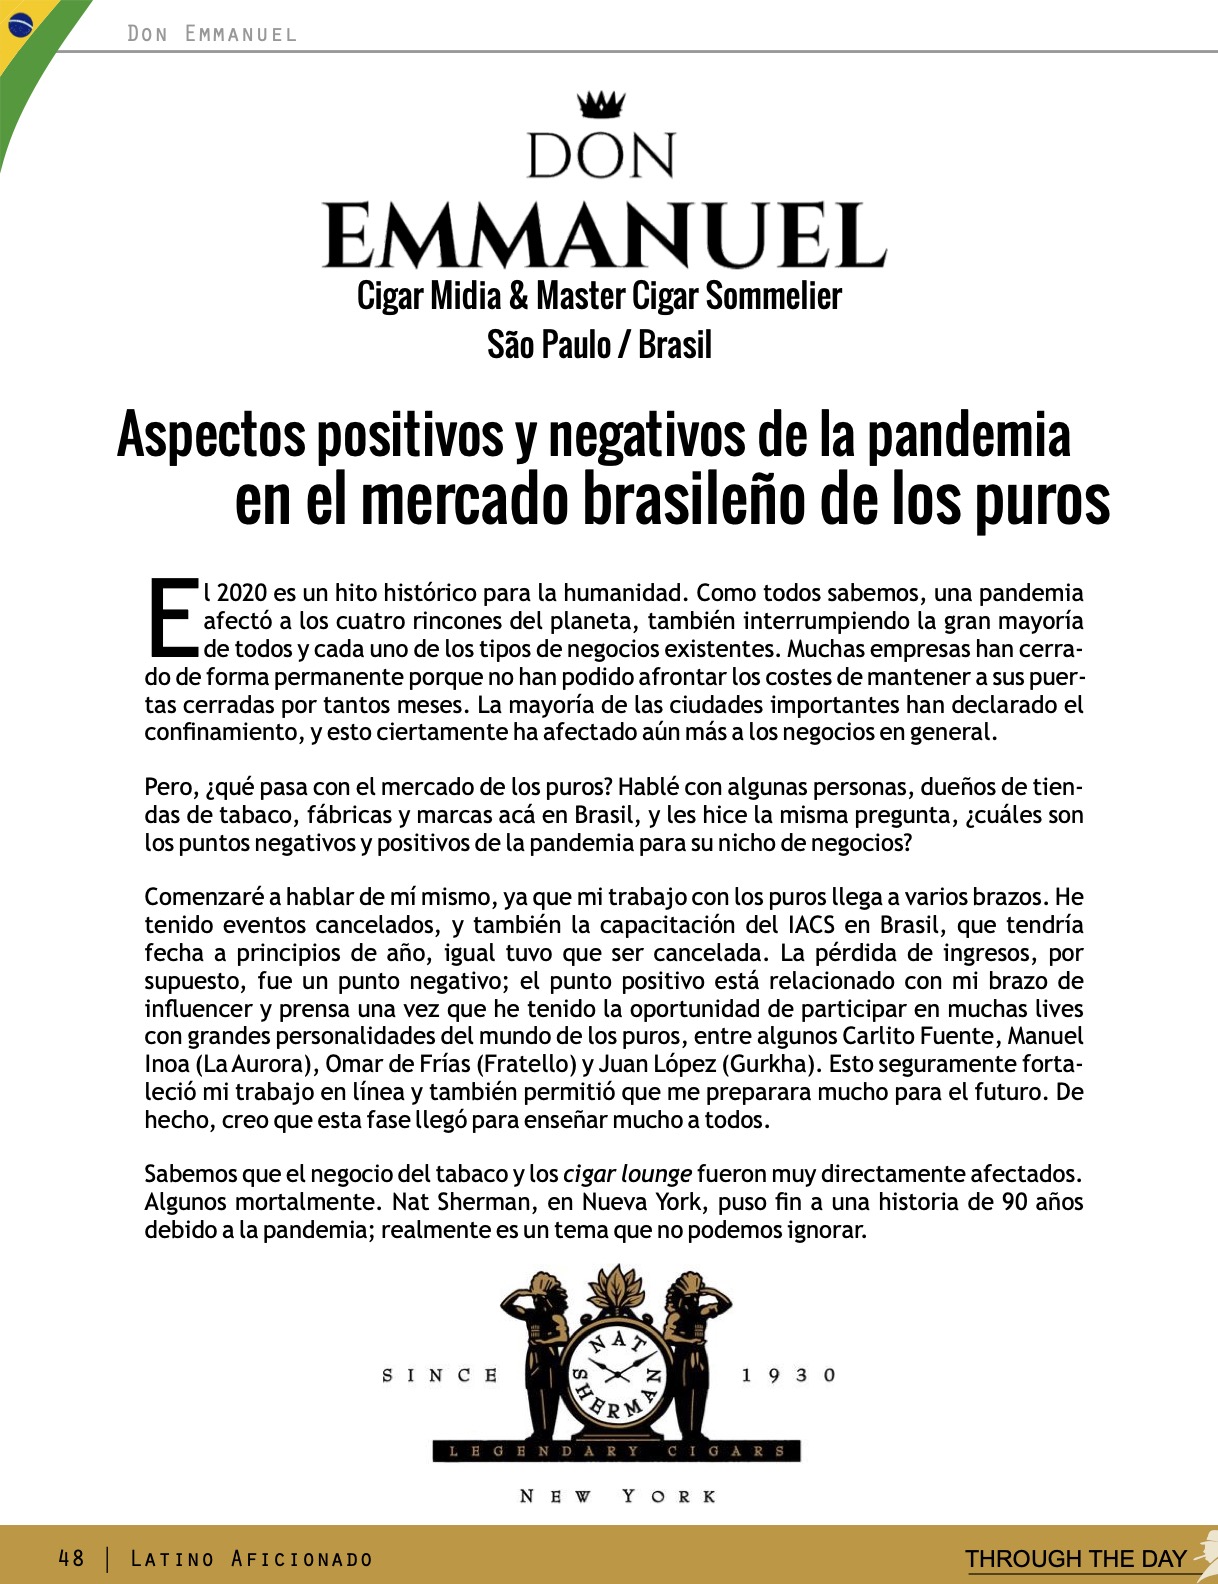 Aspectos positivos y negativos de la pandemia en el mercado brasileño de los puros